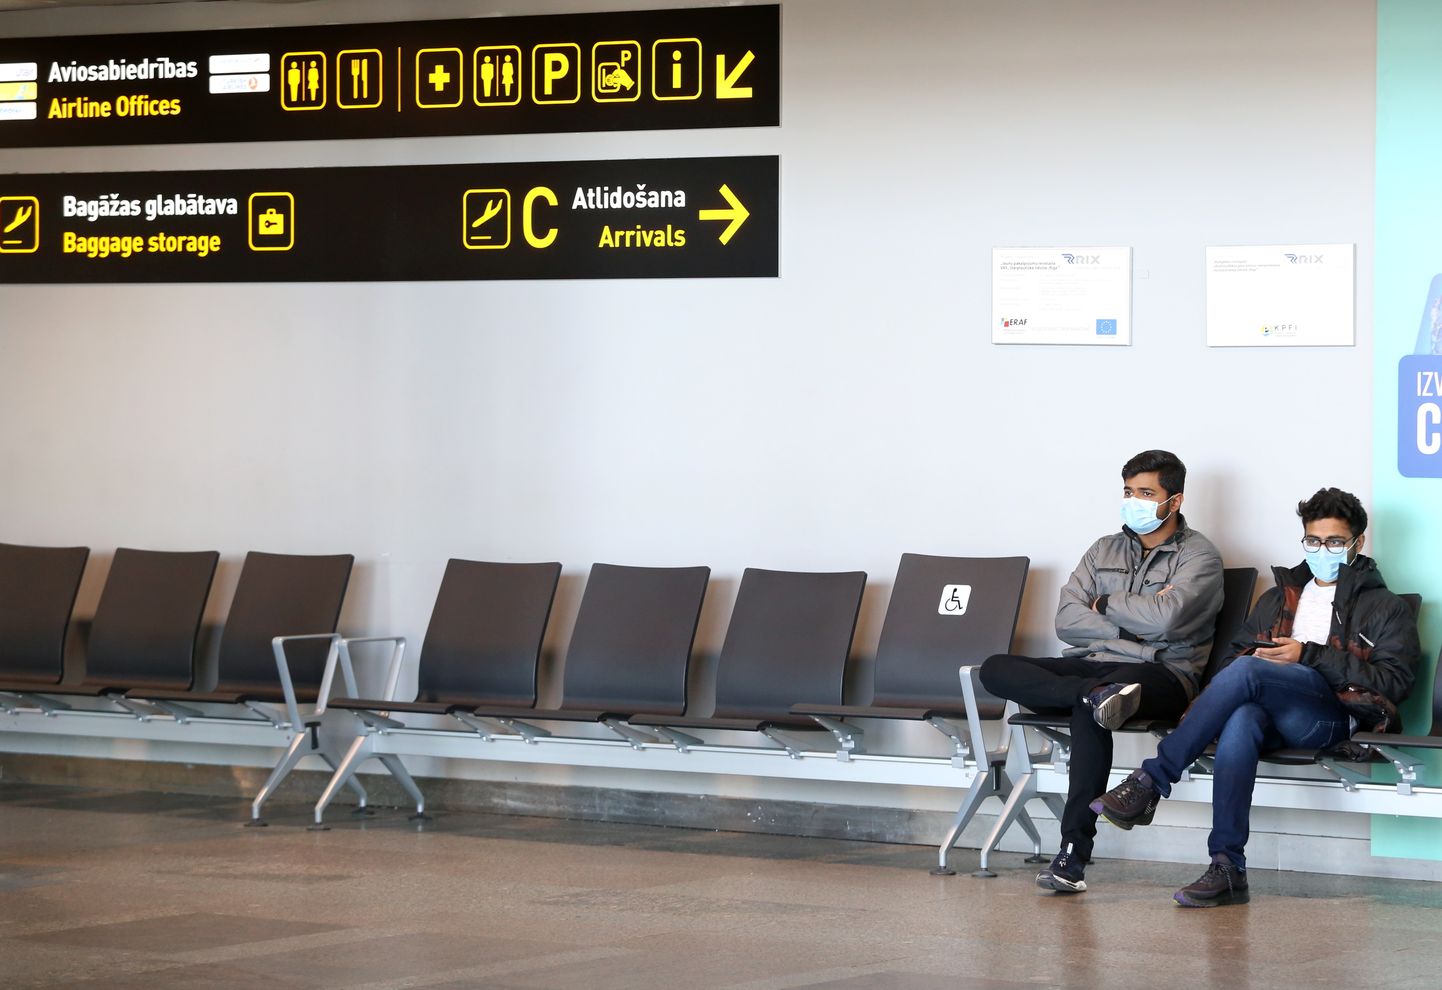 Cilvēki sapulcējušies pēdējiem avioreisiem starptautiskajā lidostā "Rīga", kur jaunā koronavīrusa izraisītās slimības „Covid-19” izplatības mazināšanai uz ārkārtas situācijas laiku līdz 14.aprīlim apturēti starptautiskie pasažieru pārvadājumi.